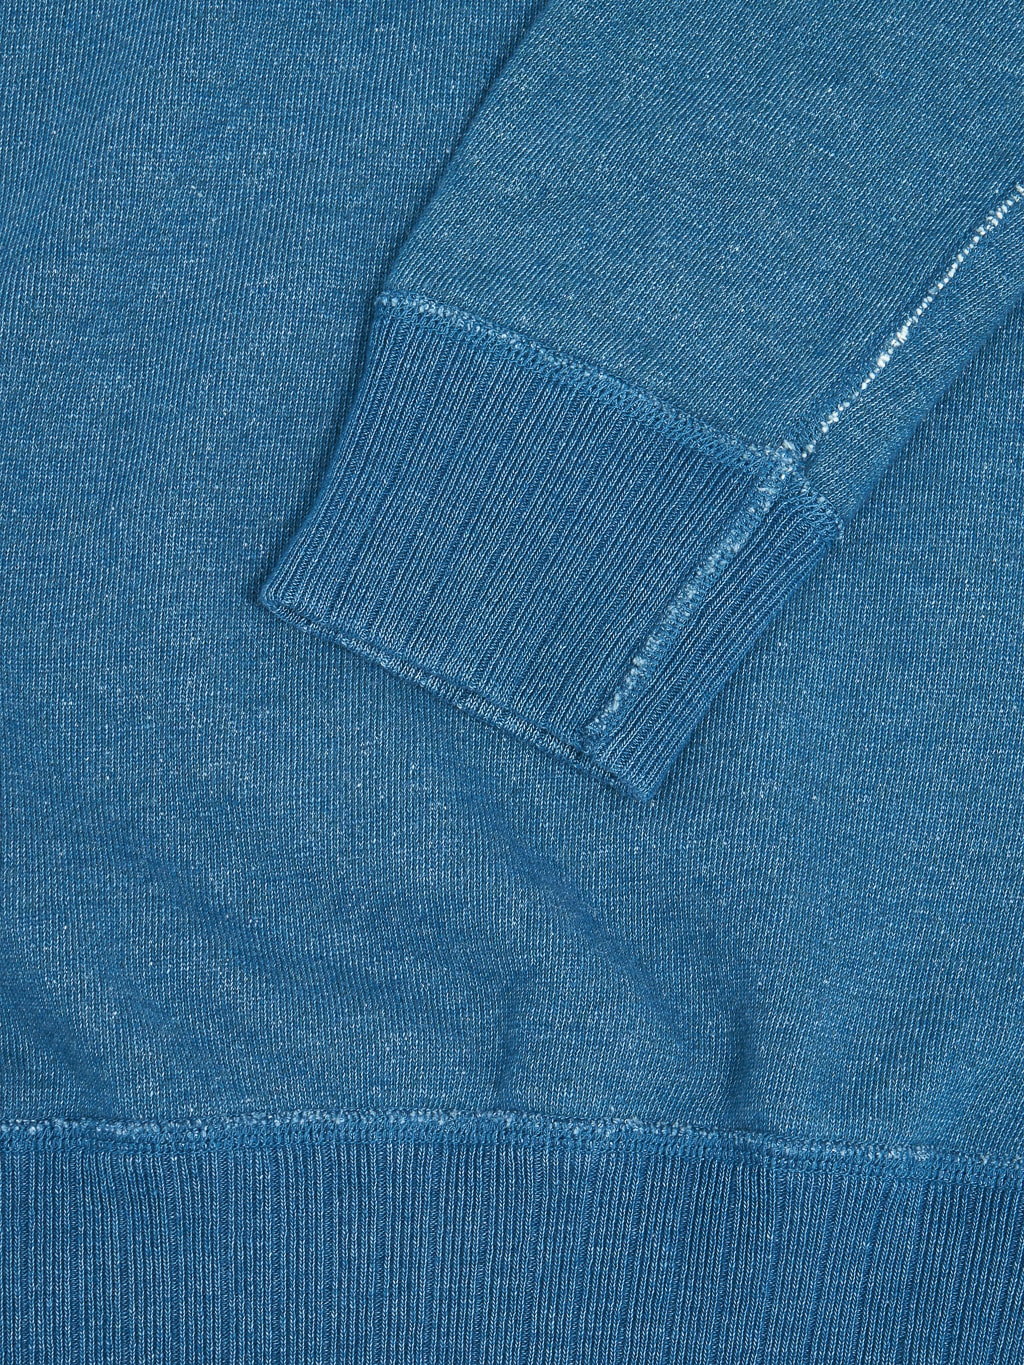  Pure Blue Japan Slub Yarn Sweatshirt Greencast Indigo cuff